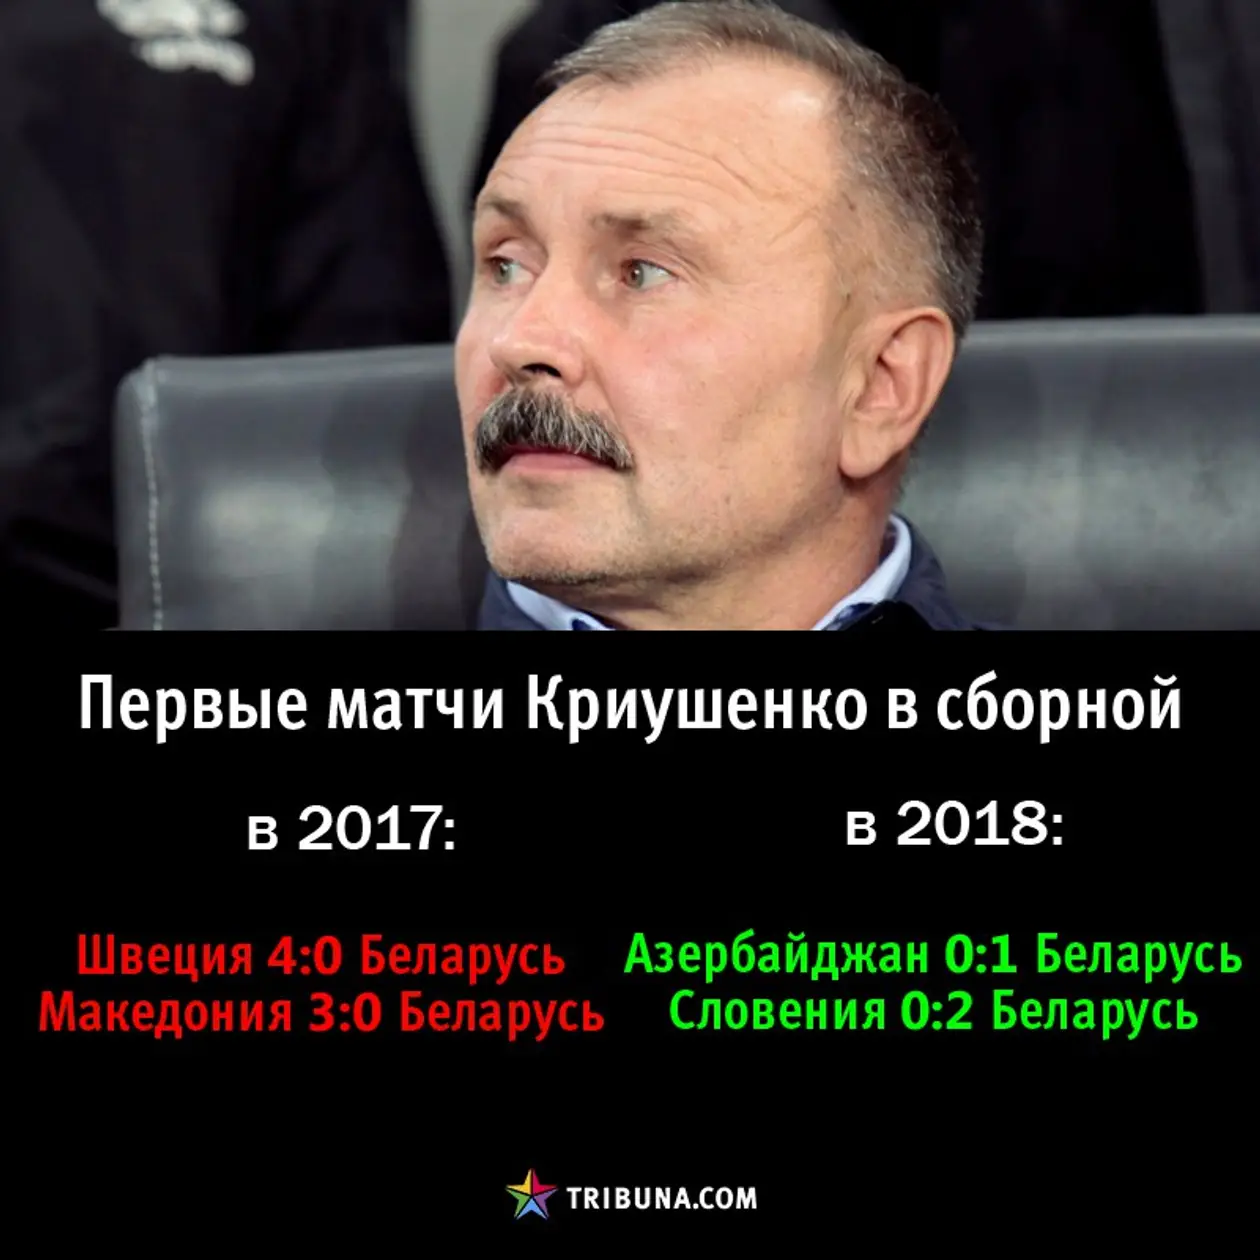 Прогресс сборной Криушенко за год: вы не можете его отрицать